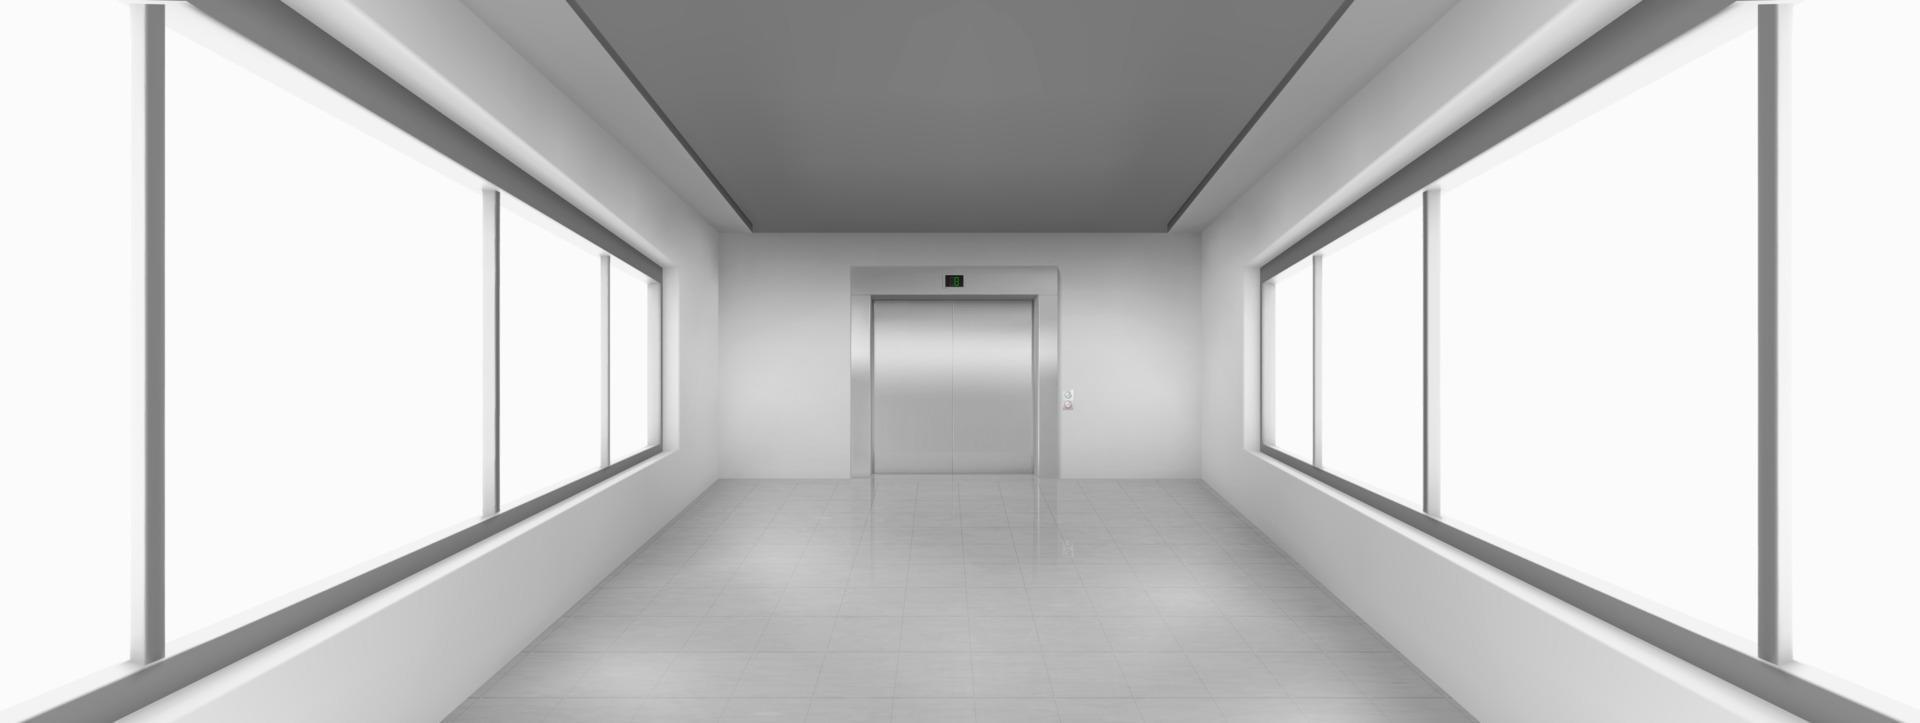 leerer Korridor mit großen Fenstern, Aufzugstür vektor